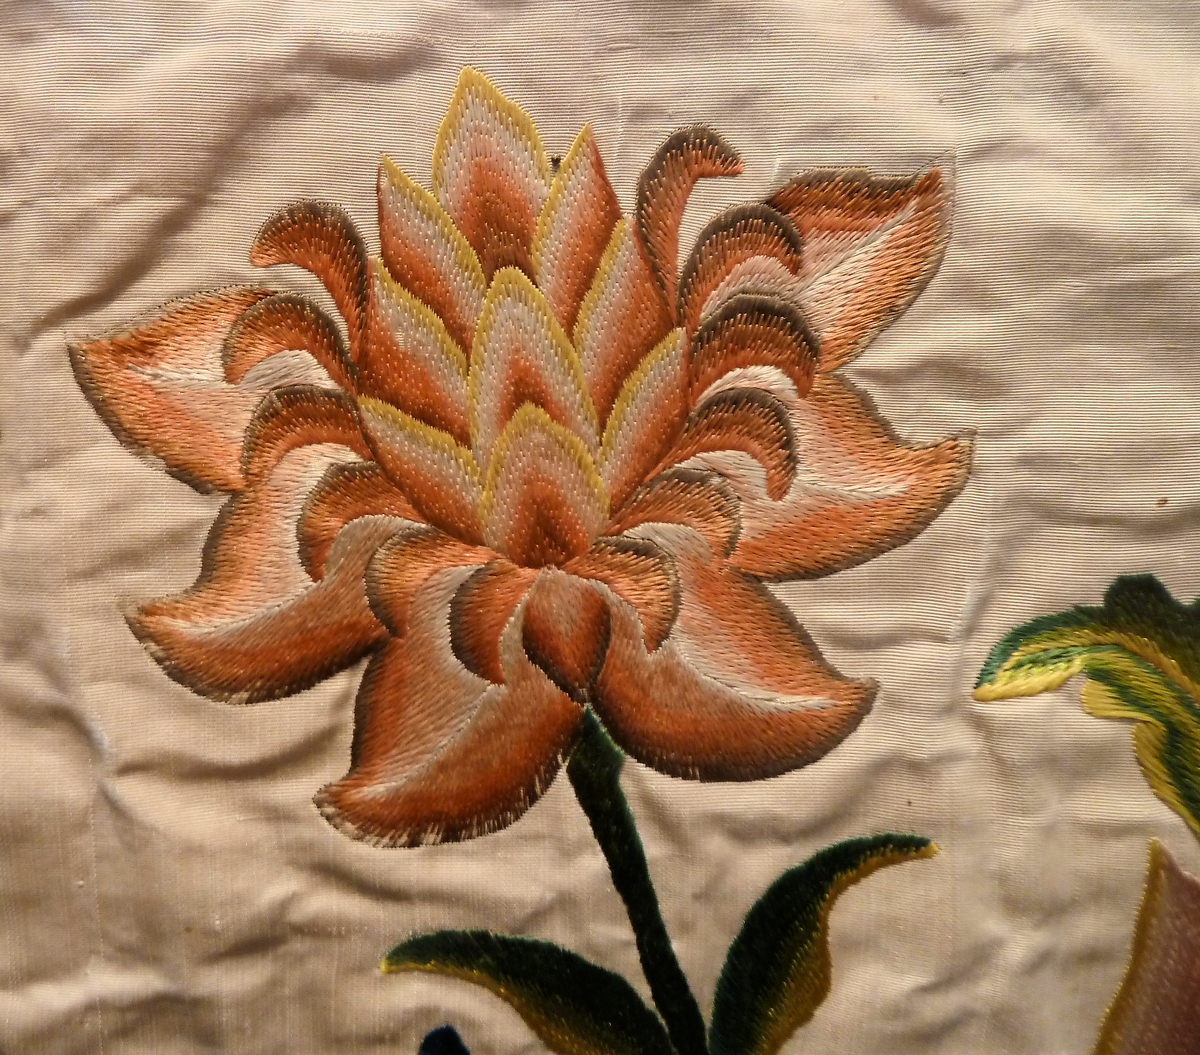 Silk Embroidery Patterns Free Satin Stitch Wikipedia